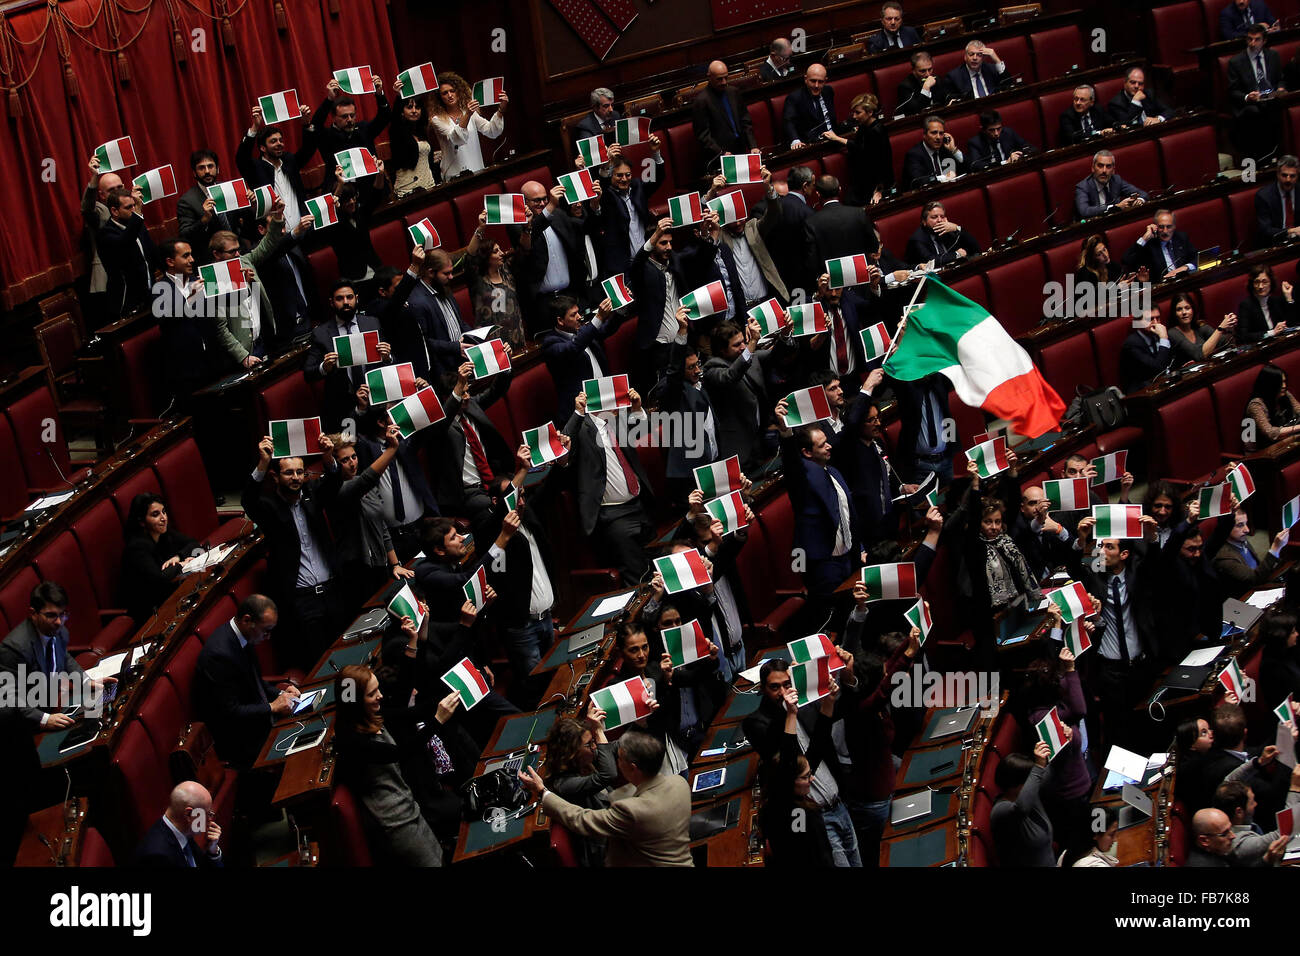 Le mouvement de protestation 5 étoile cette vague de drapeaux et bannières italien Rome 11e Janvier 2016. Chambre des députés. Votation finale Banque D'Images